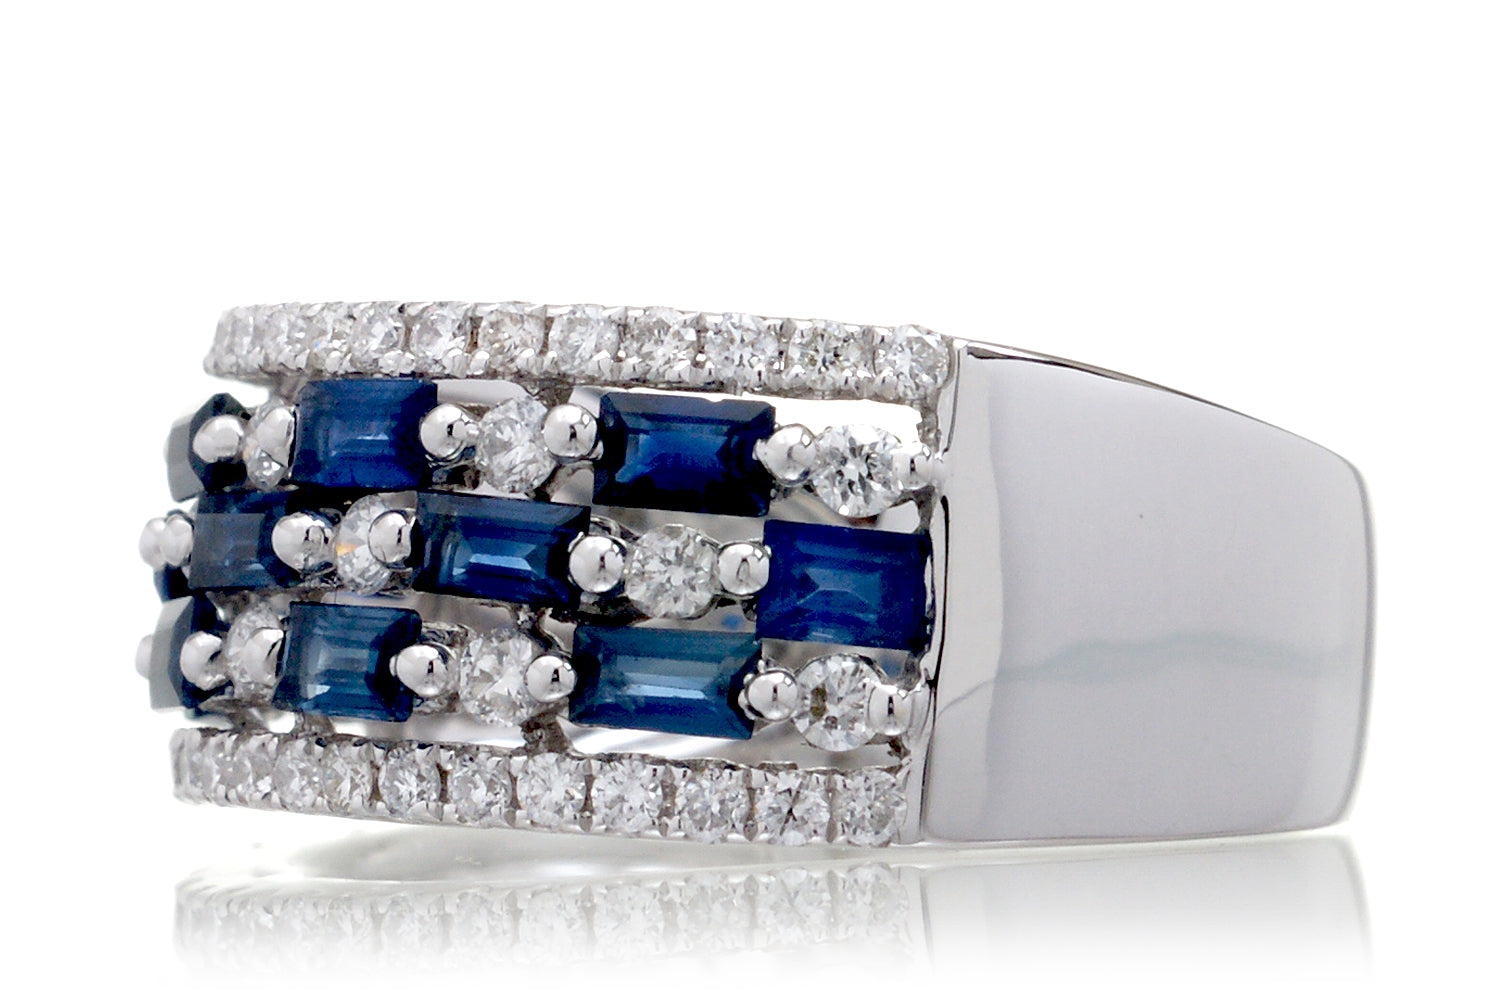 The Bridgette Baguette Sapphire Ring